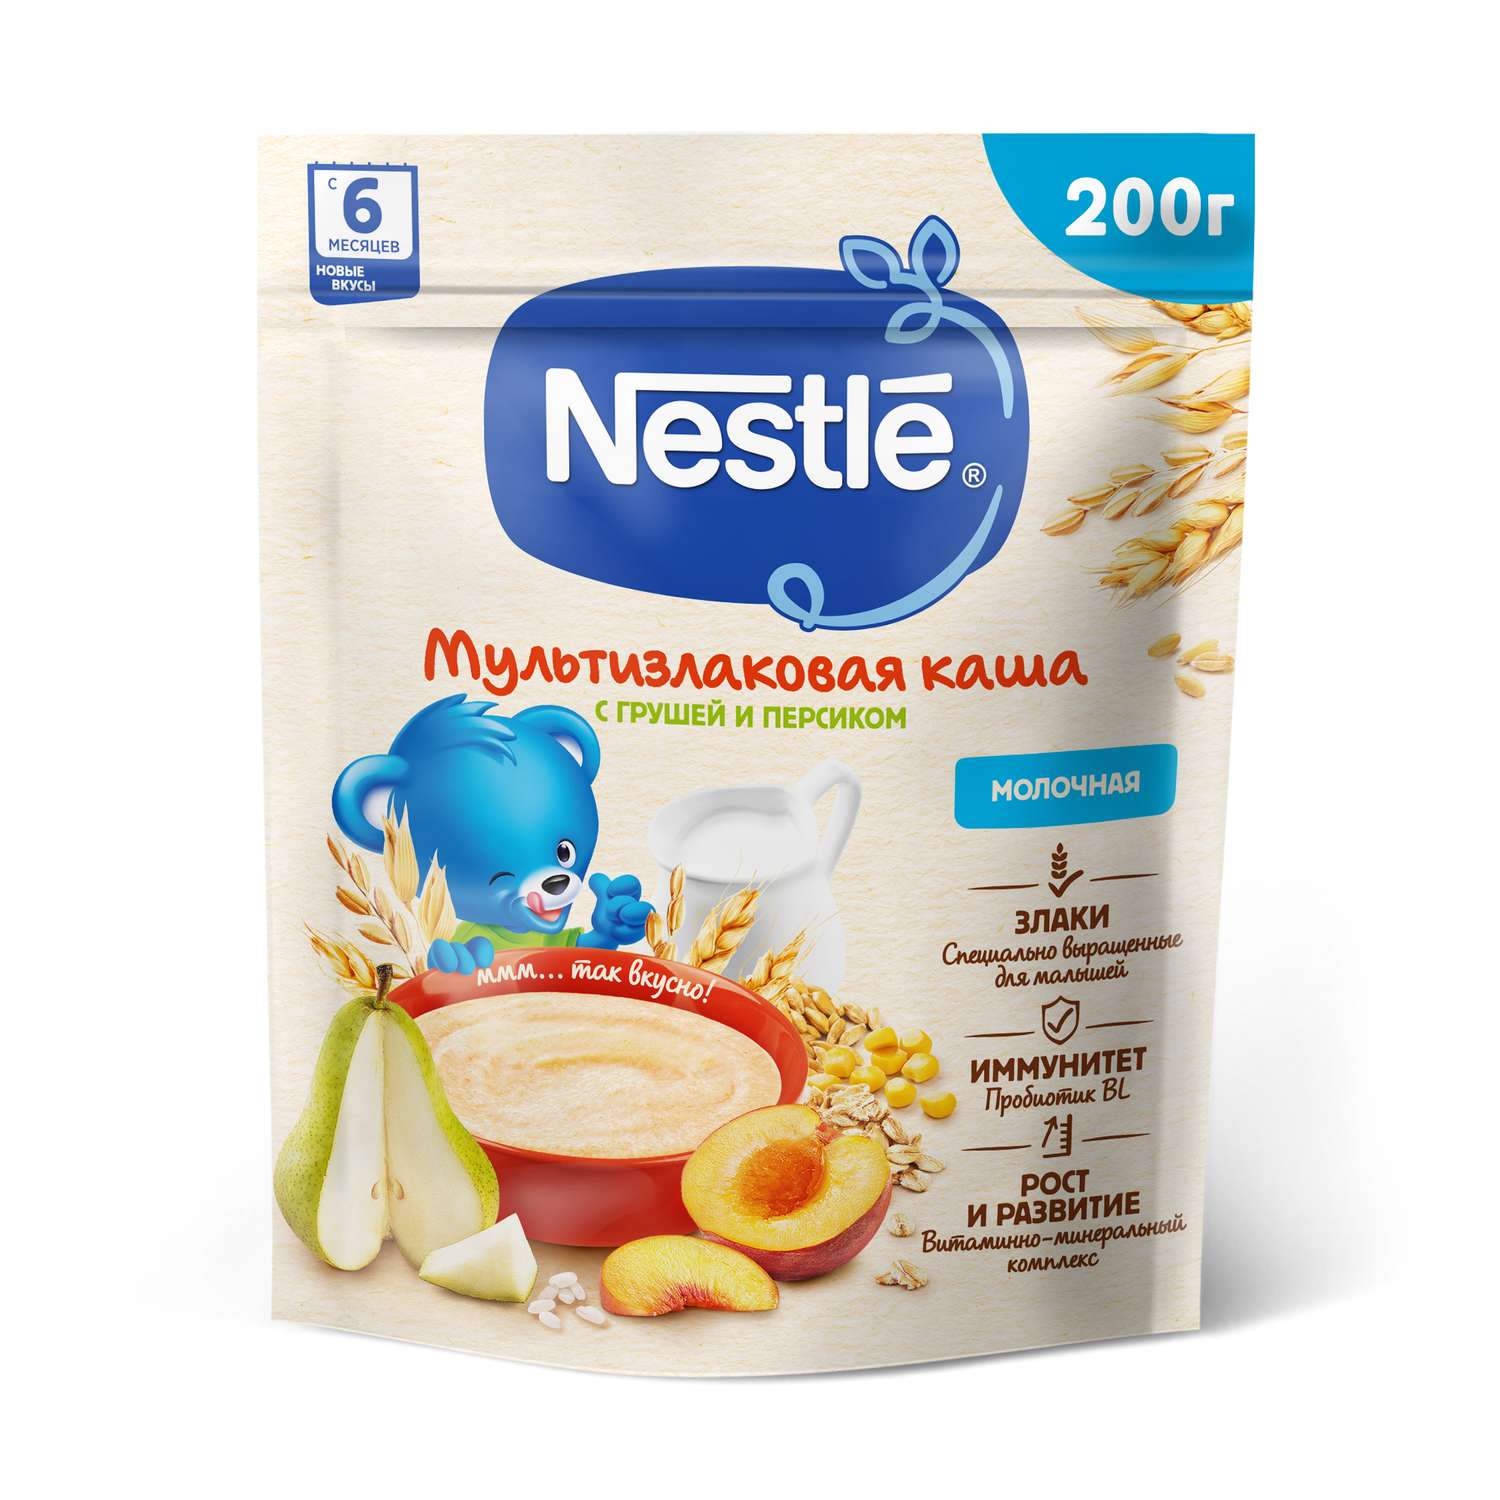 Каша молочная Nestle мультизлаковая груша-персик 200г с 6месяцев - фото 1